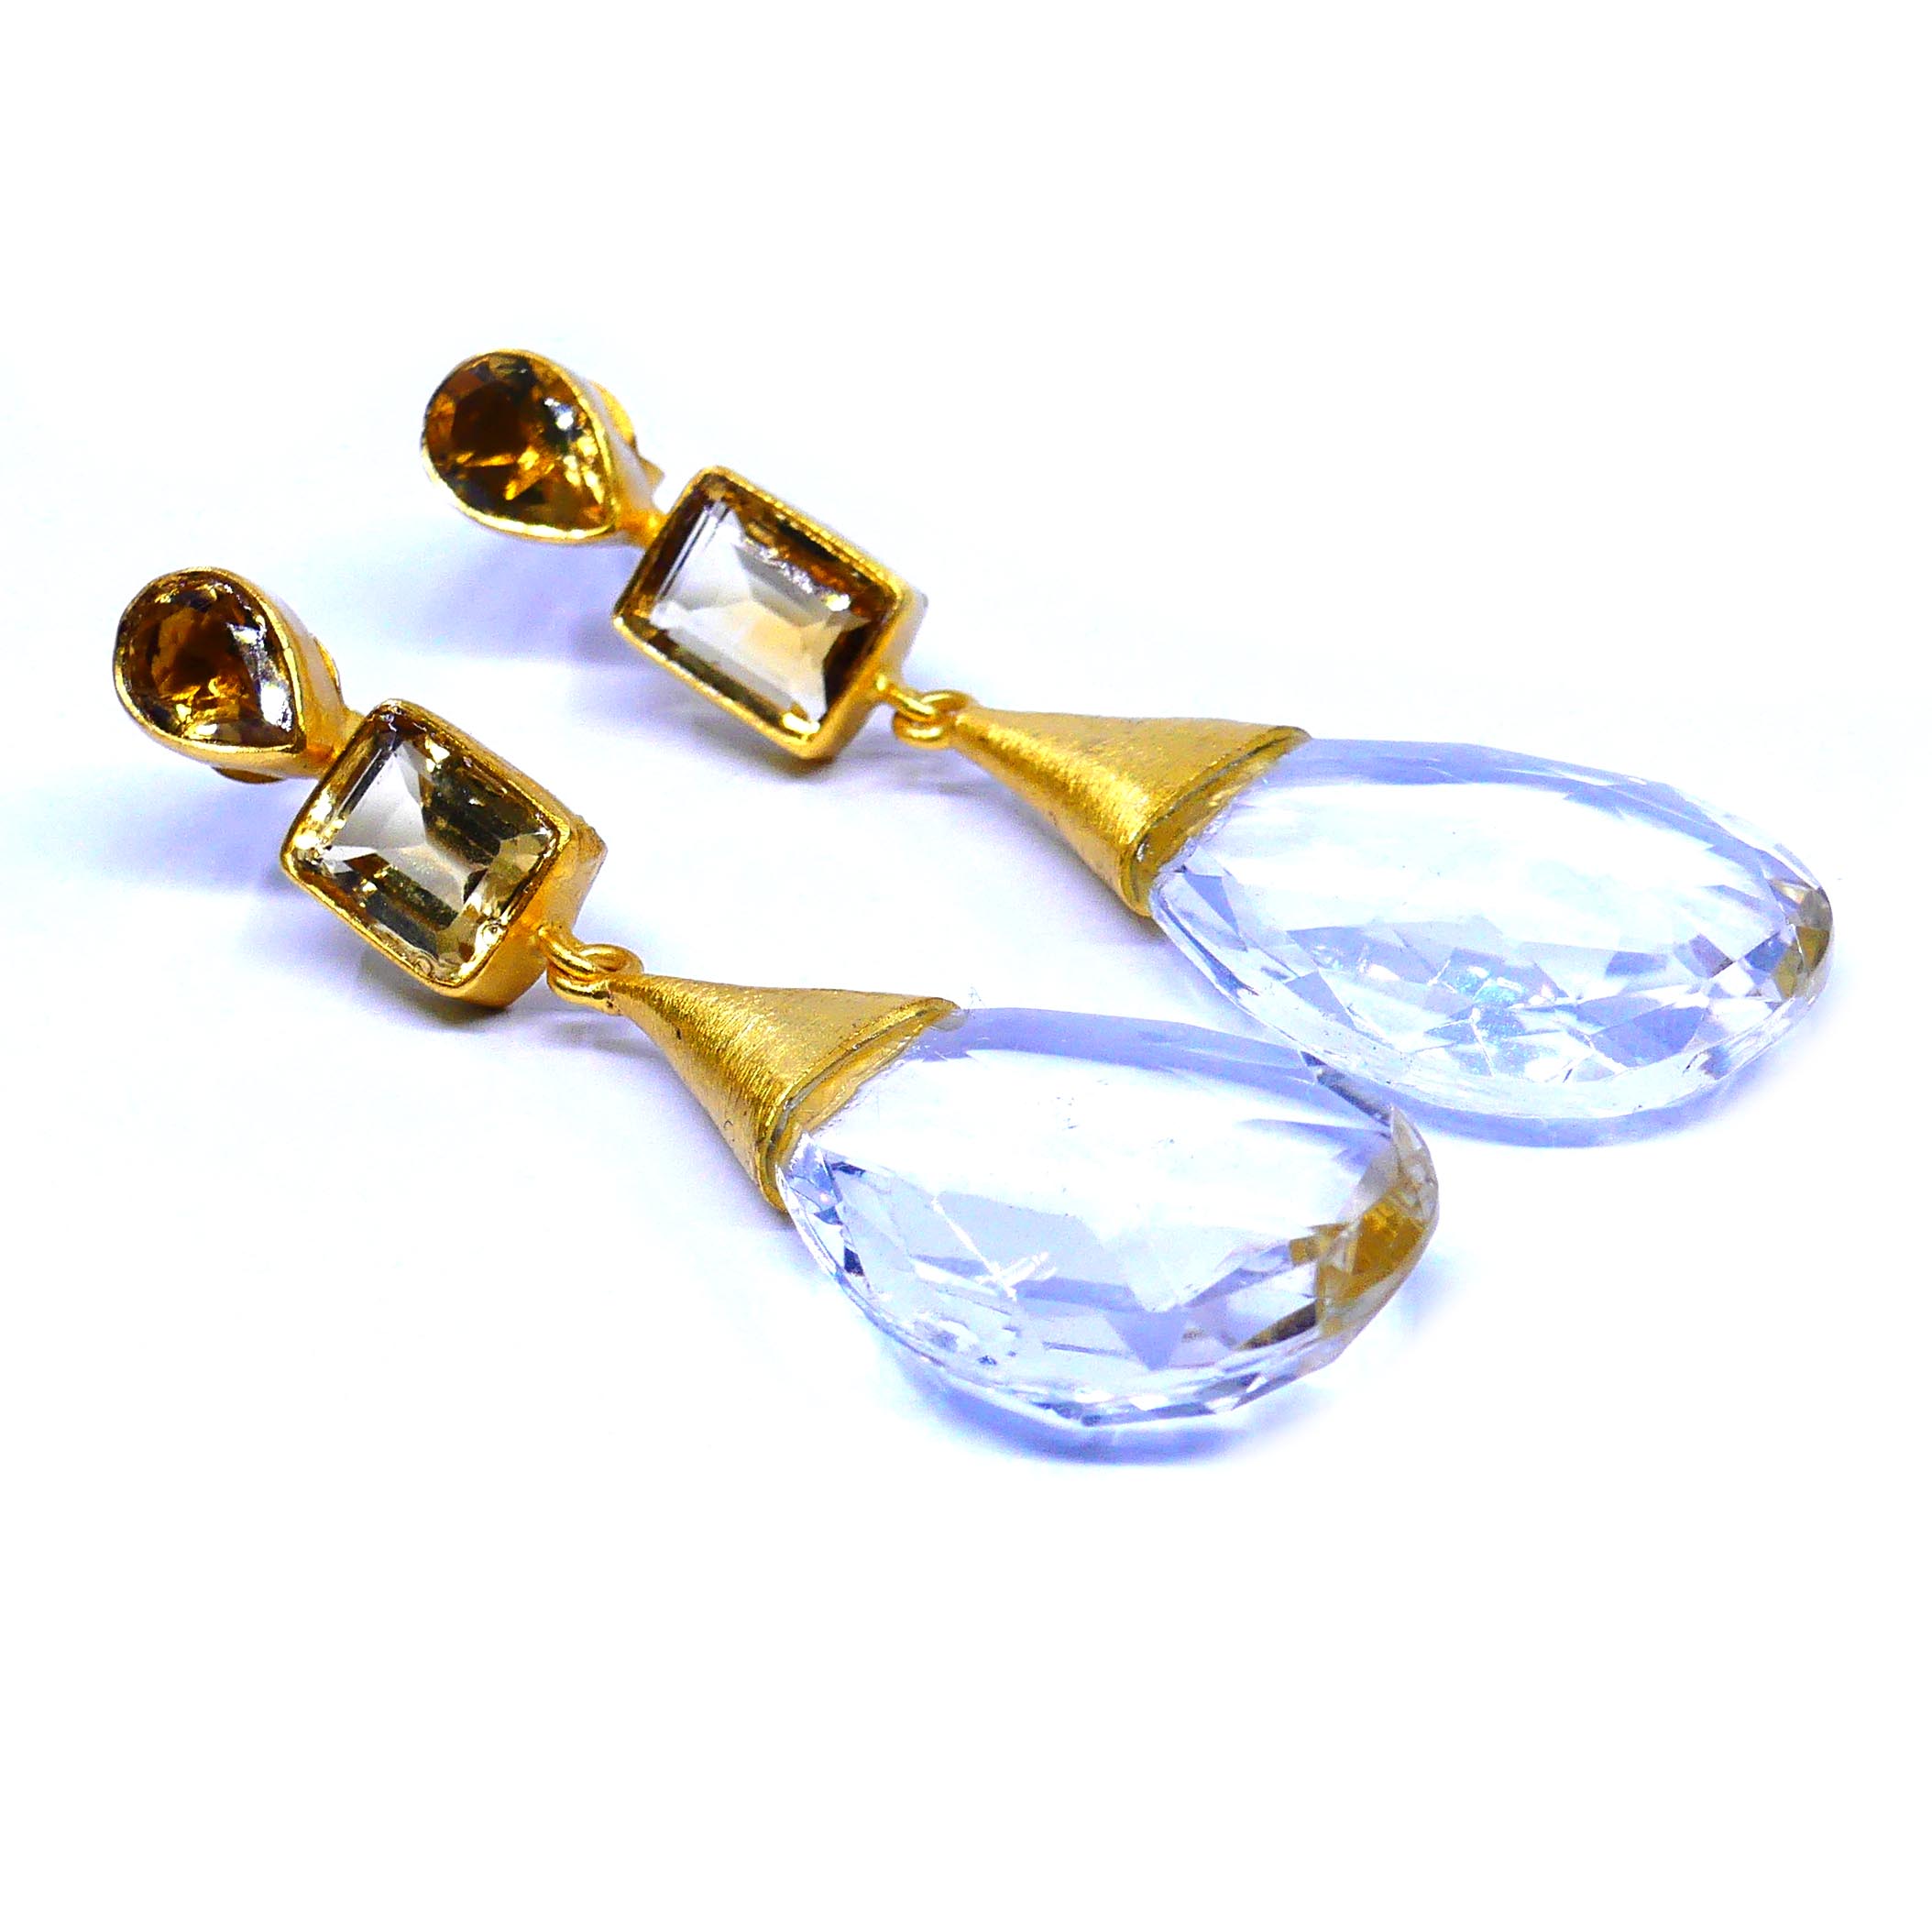 Citrine Crystal Earrings